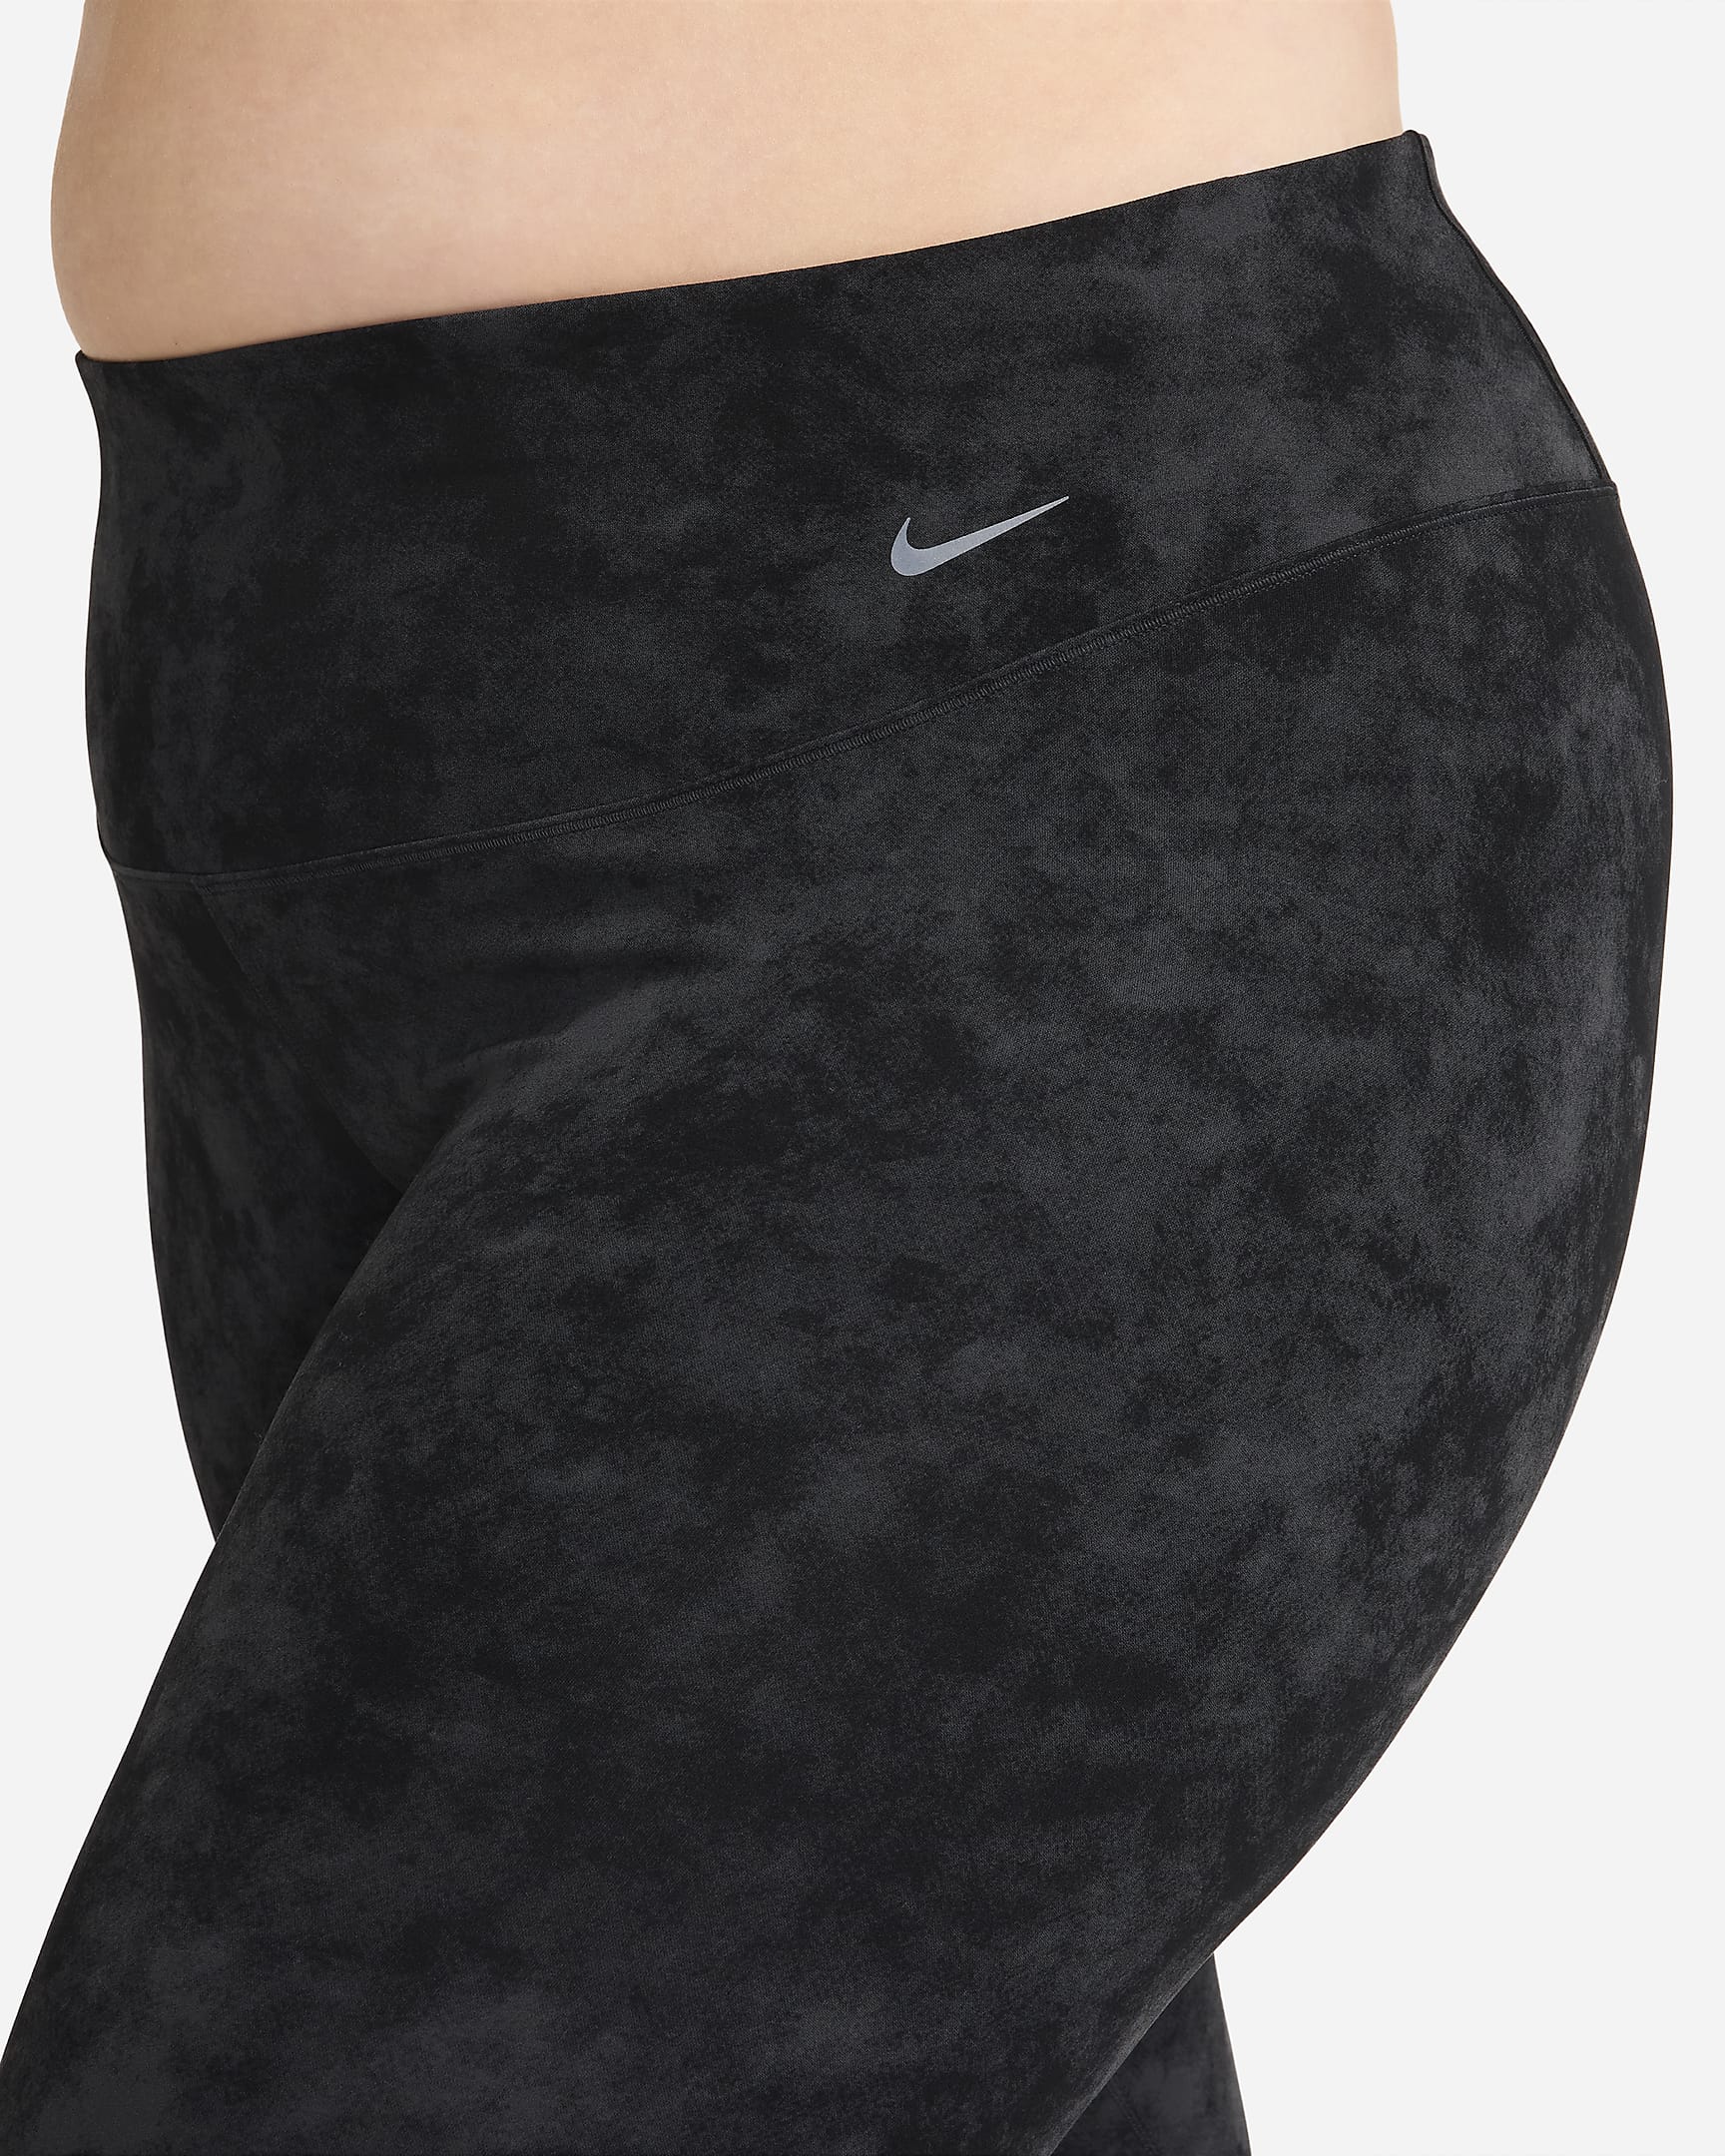 Nike Zenvy Tie-Dye Women's Gentle-Support High-Waisted 7/8 Leggings (Plus Size) - Black/Black